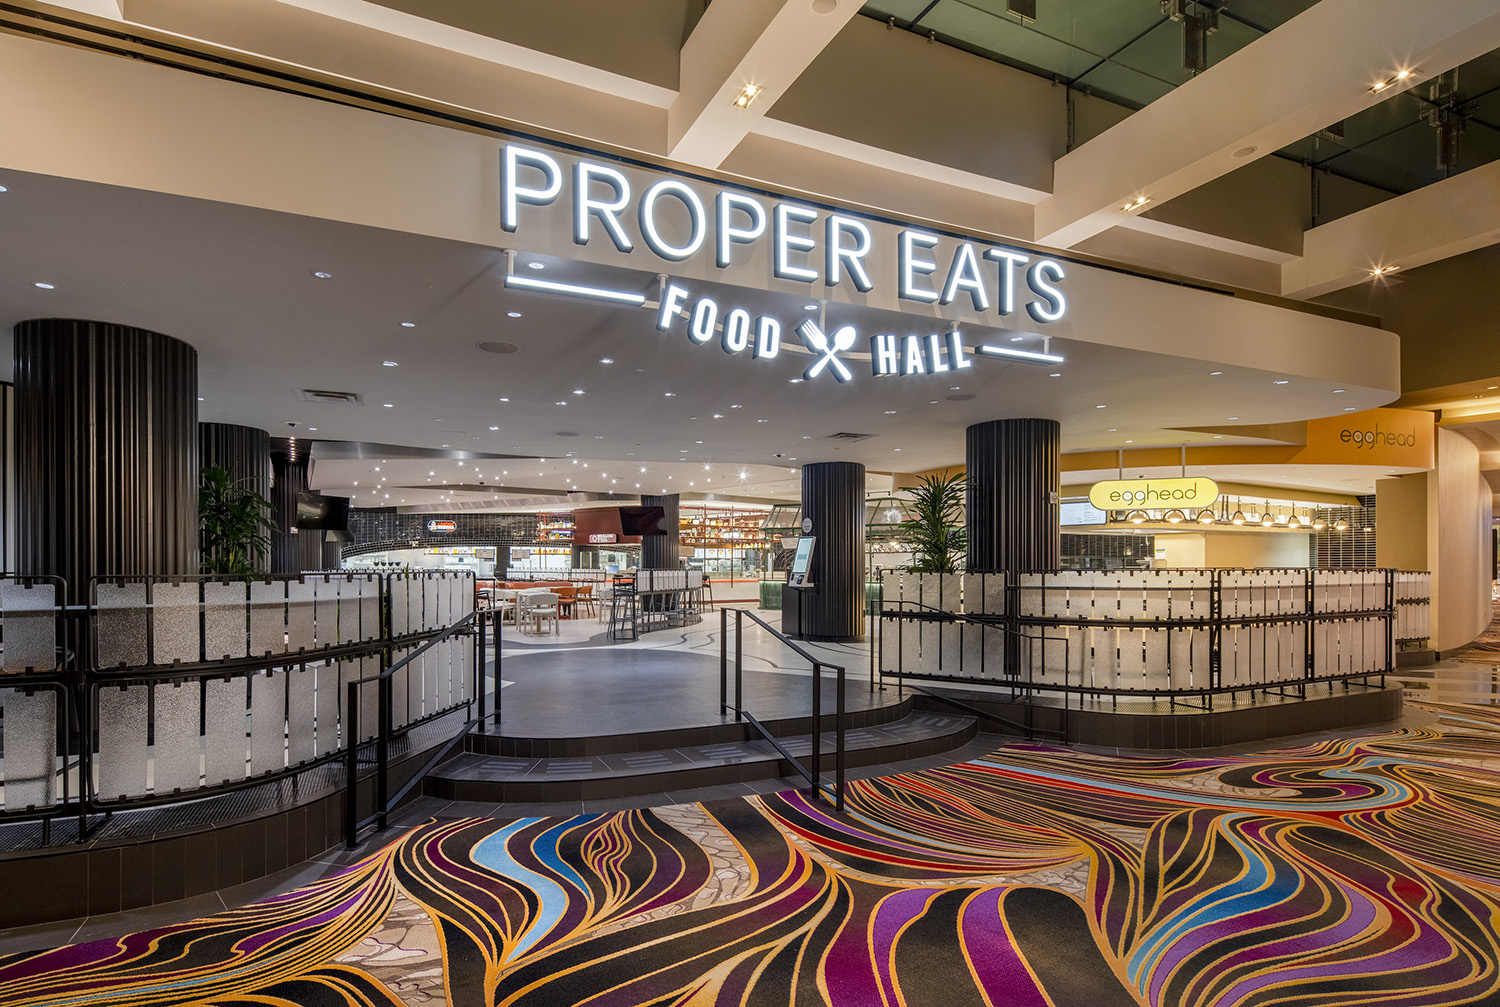 Proper Eats Food Hall at ARIA Resort & Casino